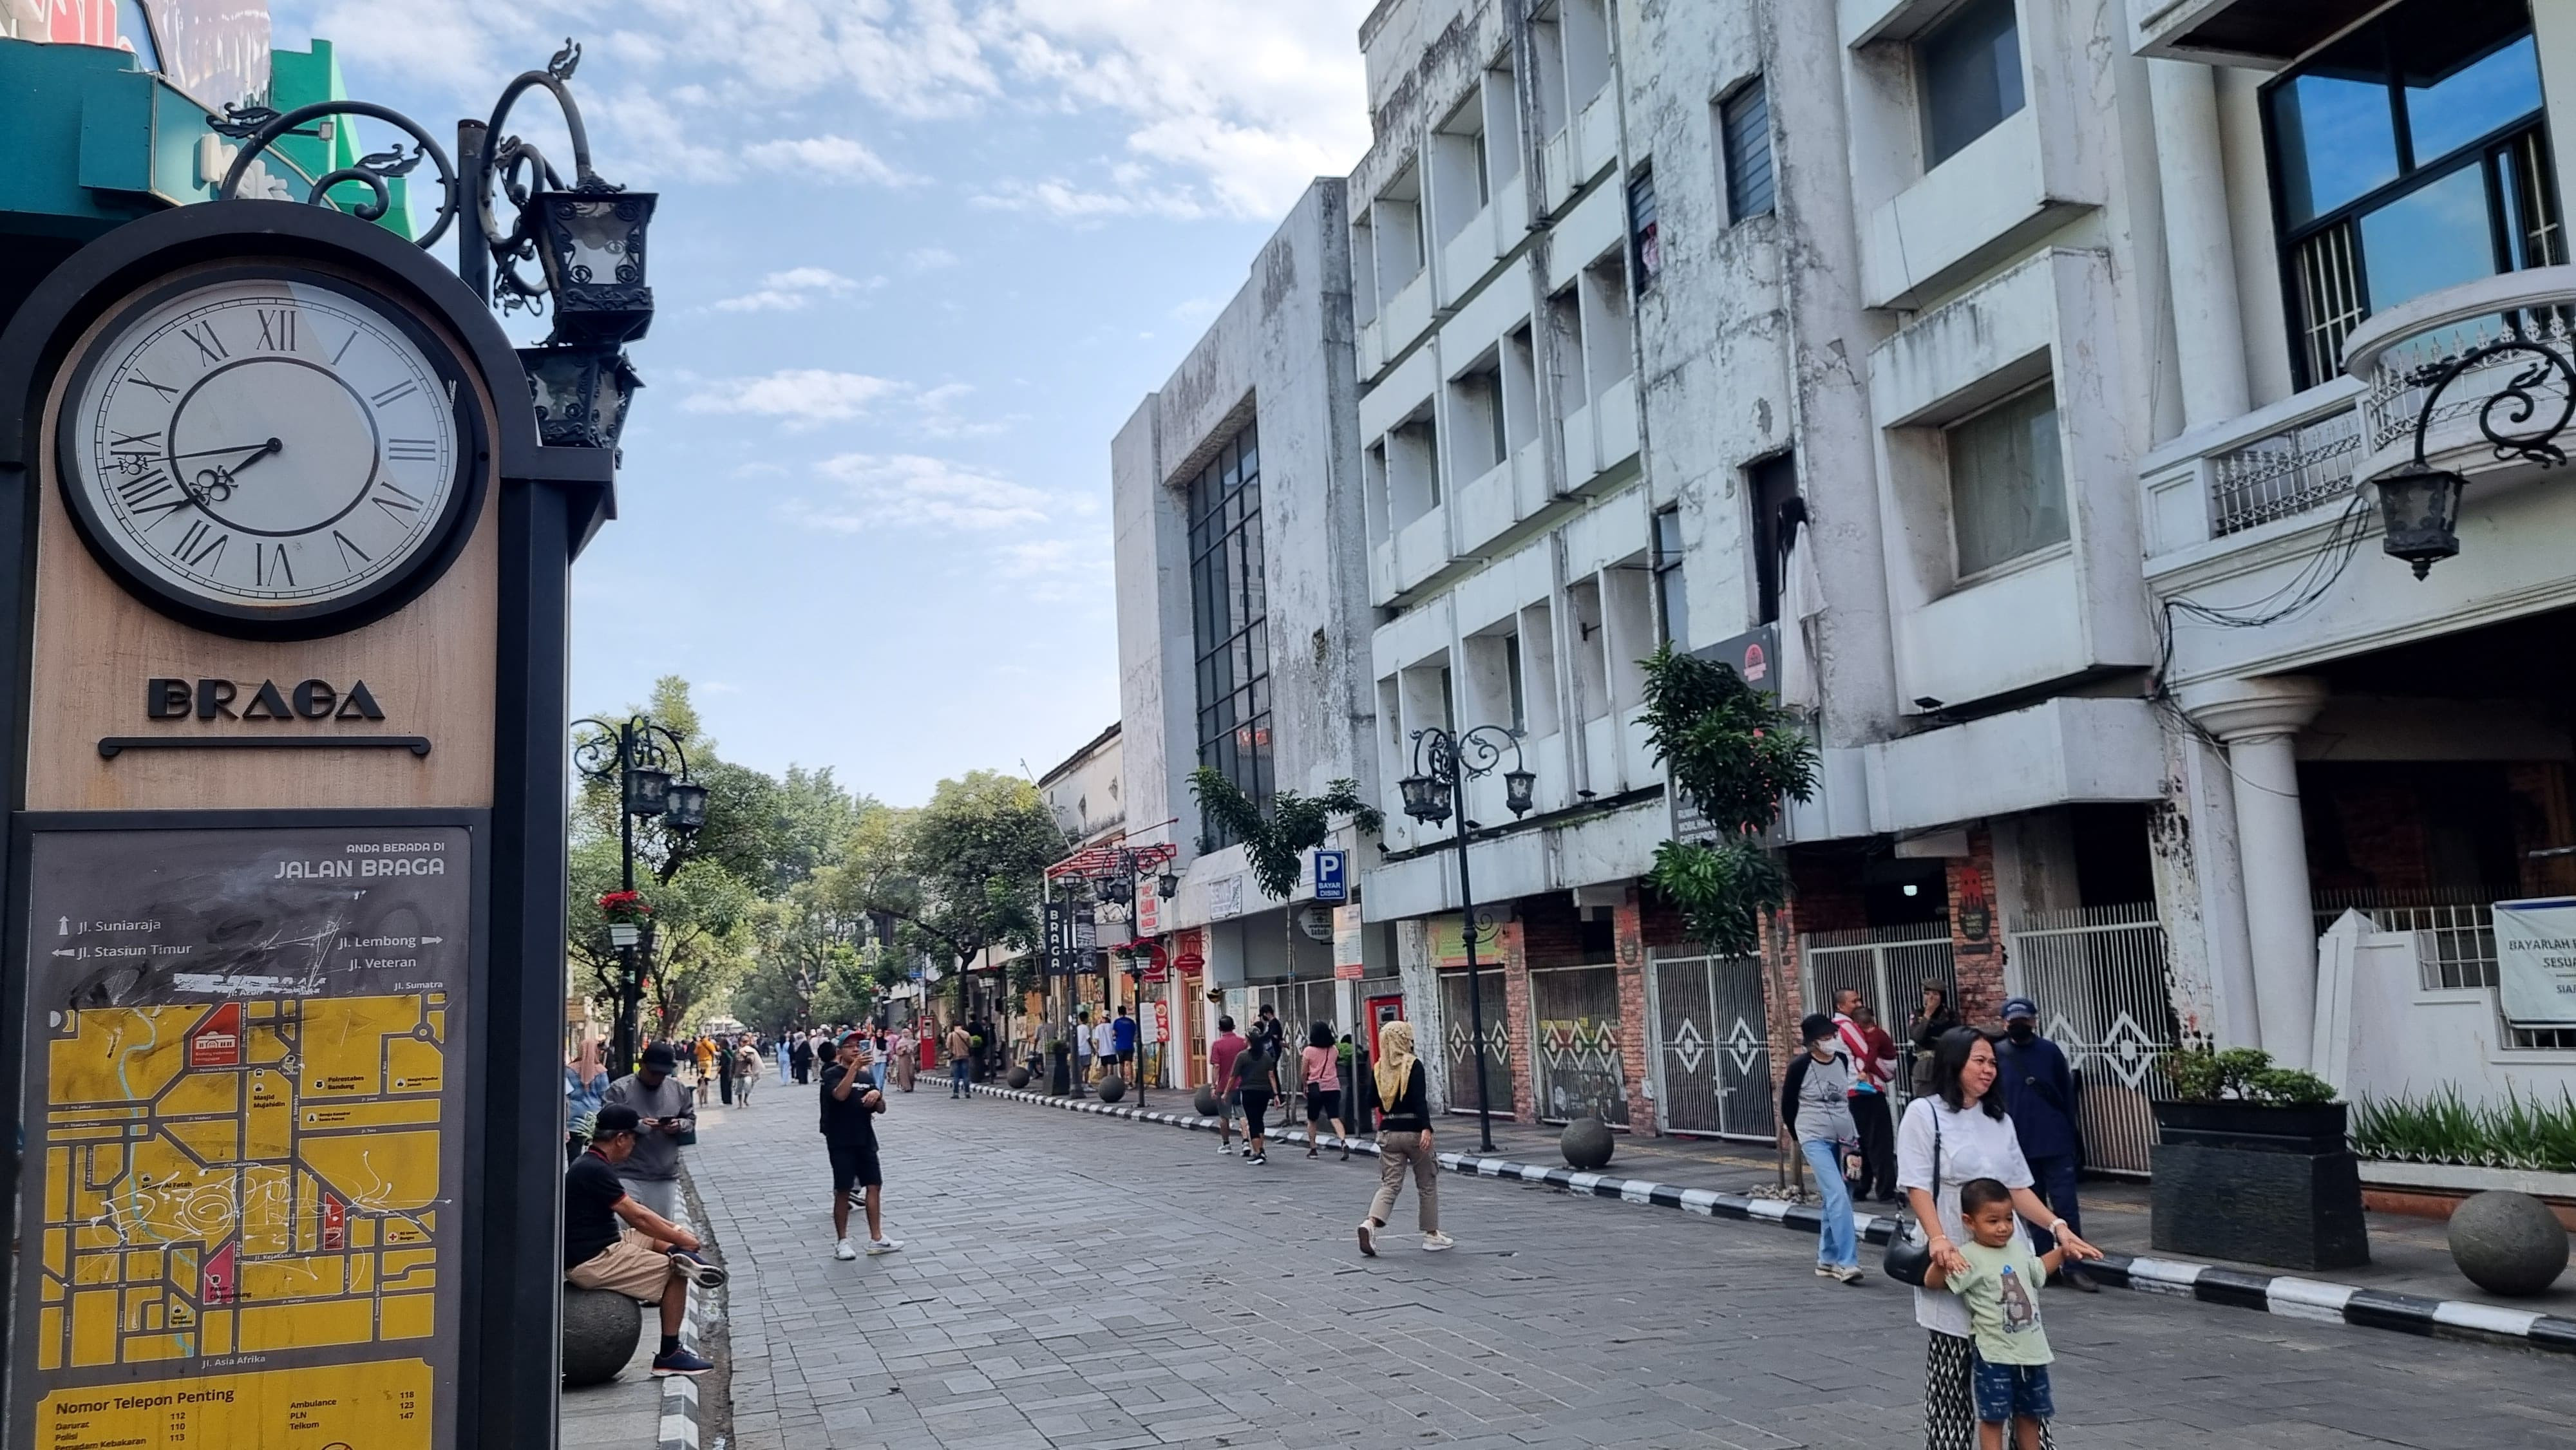 Hari Pertama Jalan Braga Bebas Kendaraan, Banyak Warga Wisata Selfie dan Berolahraga - JPNN.com Jabar